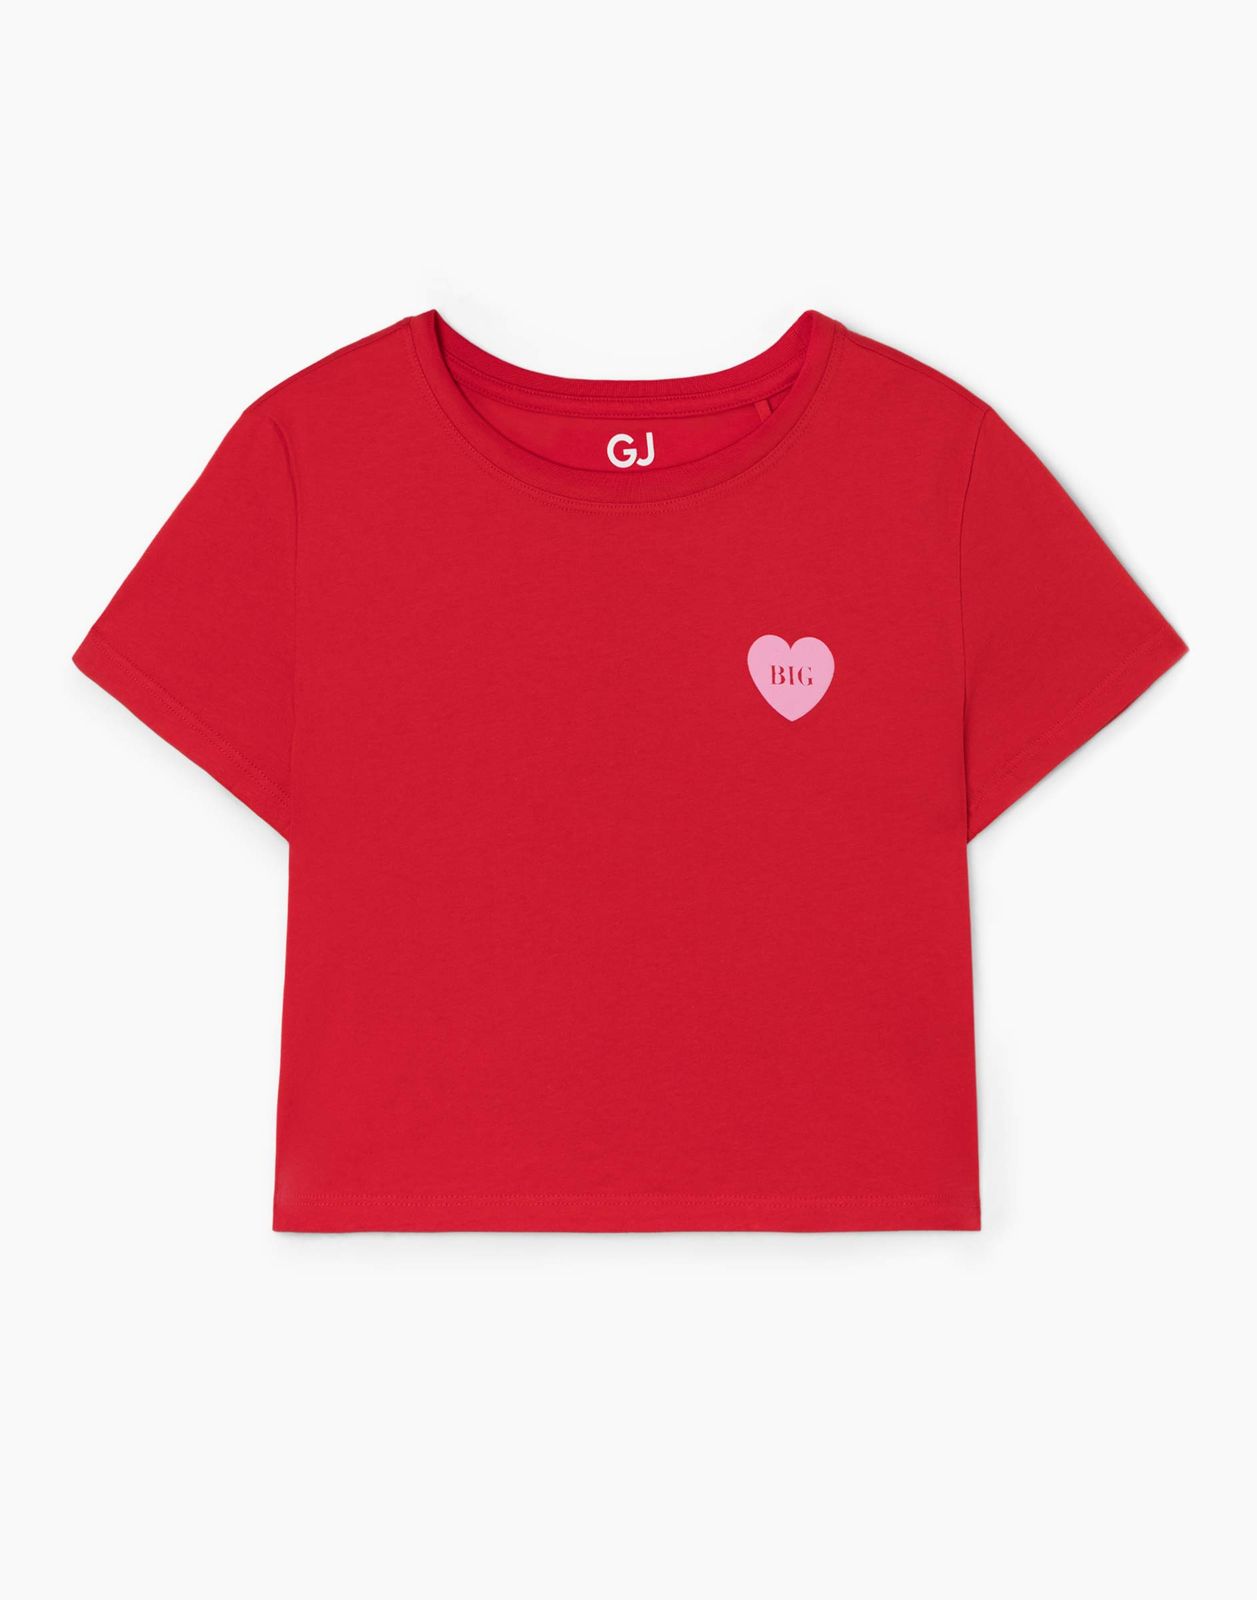 Пижамная футболка женская Gloria Jeans GSL001919 красный M/164